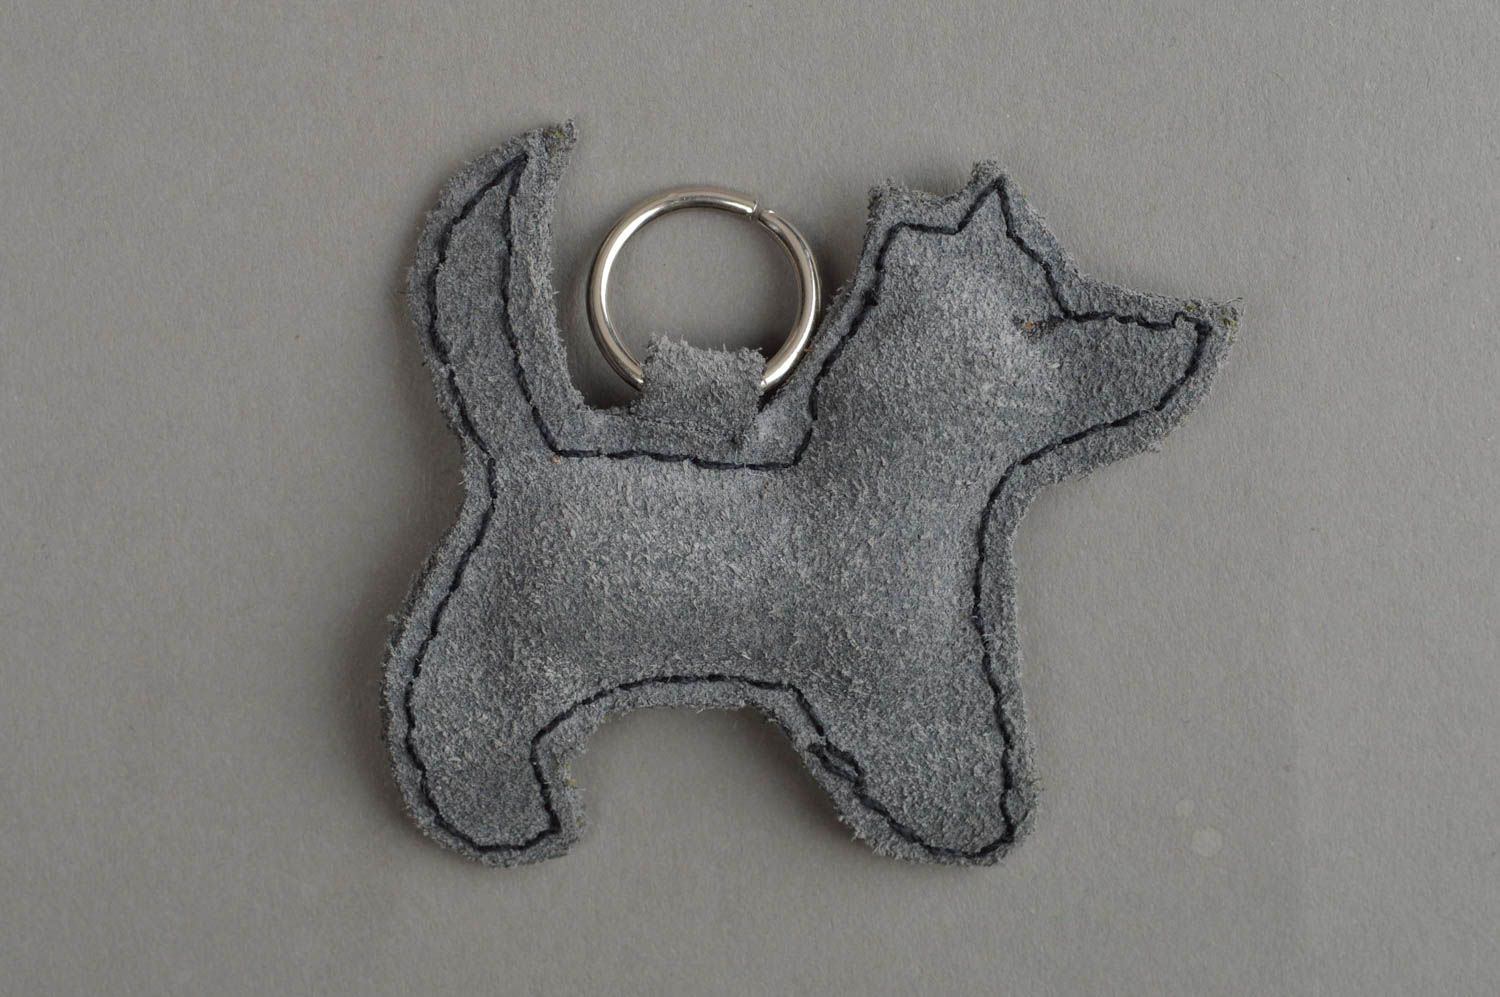 Handmade Schlüsselanhänger aus Leder klein grau mit Ring schönes Accessoire toll foto 2